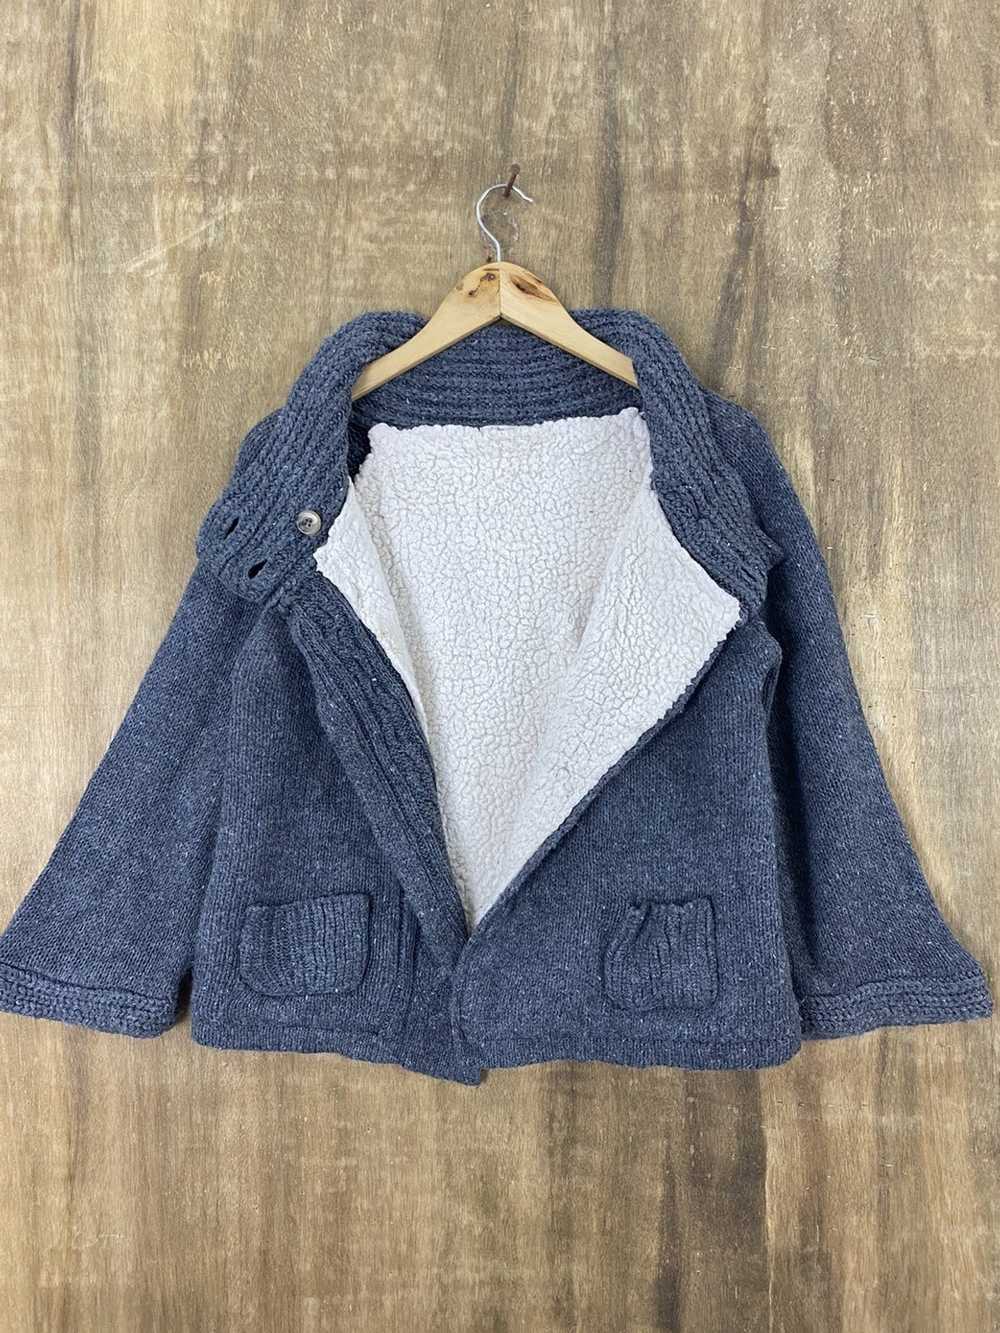 Aran Isles Knitwear × Cardigan × Japanese Brand M… - image 3